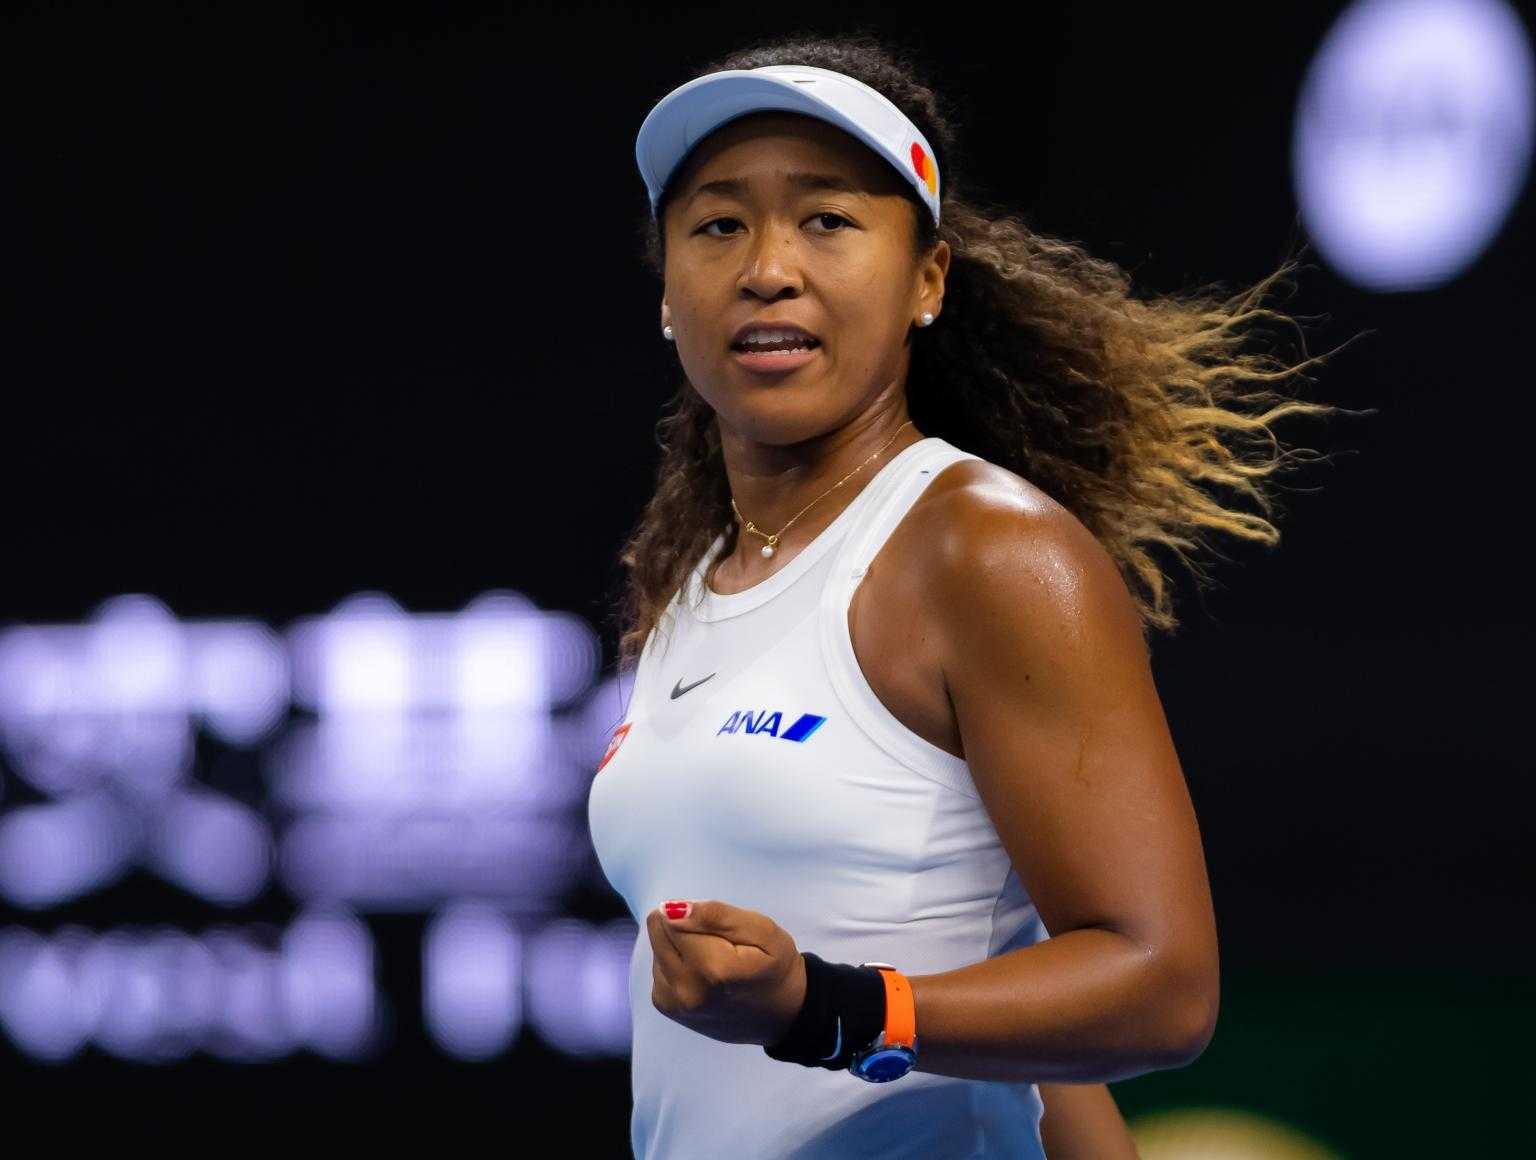 "Les attentes seraient faibles" - L'entraîneur réfléchit à l'état d'esprit de Naomi Osaka à l'US Open 2020